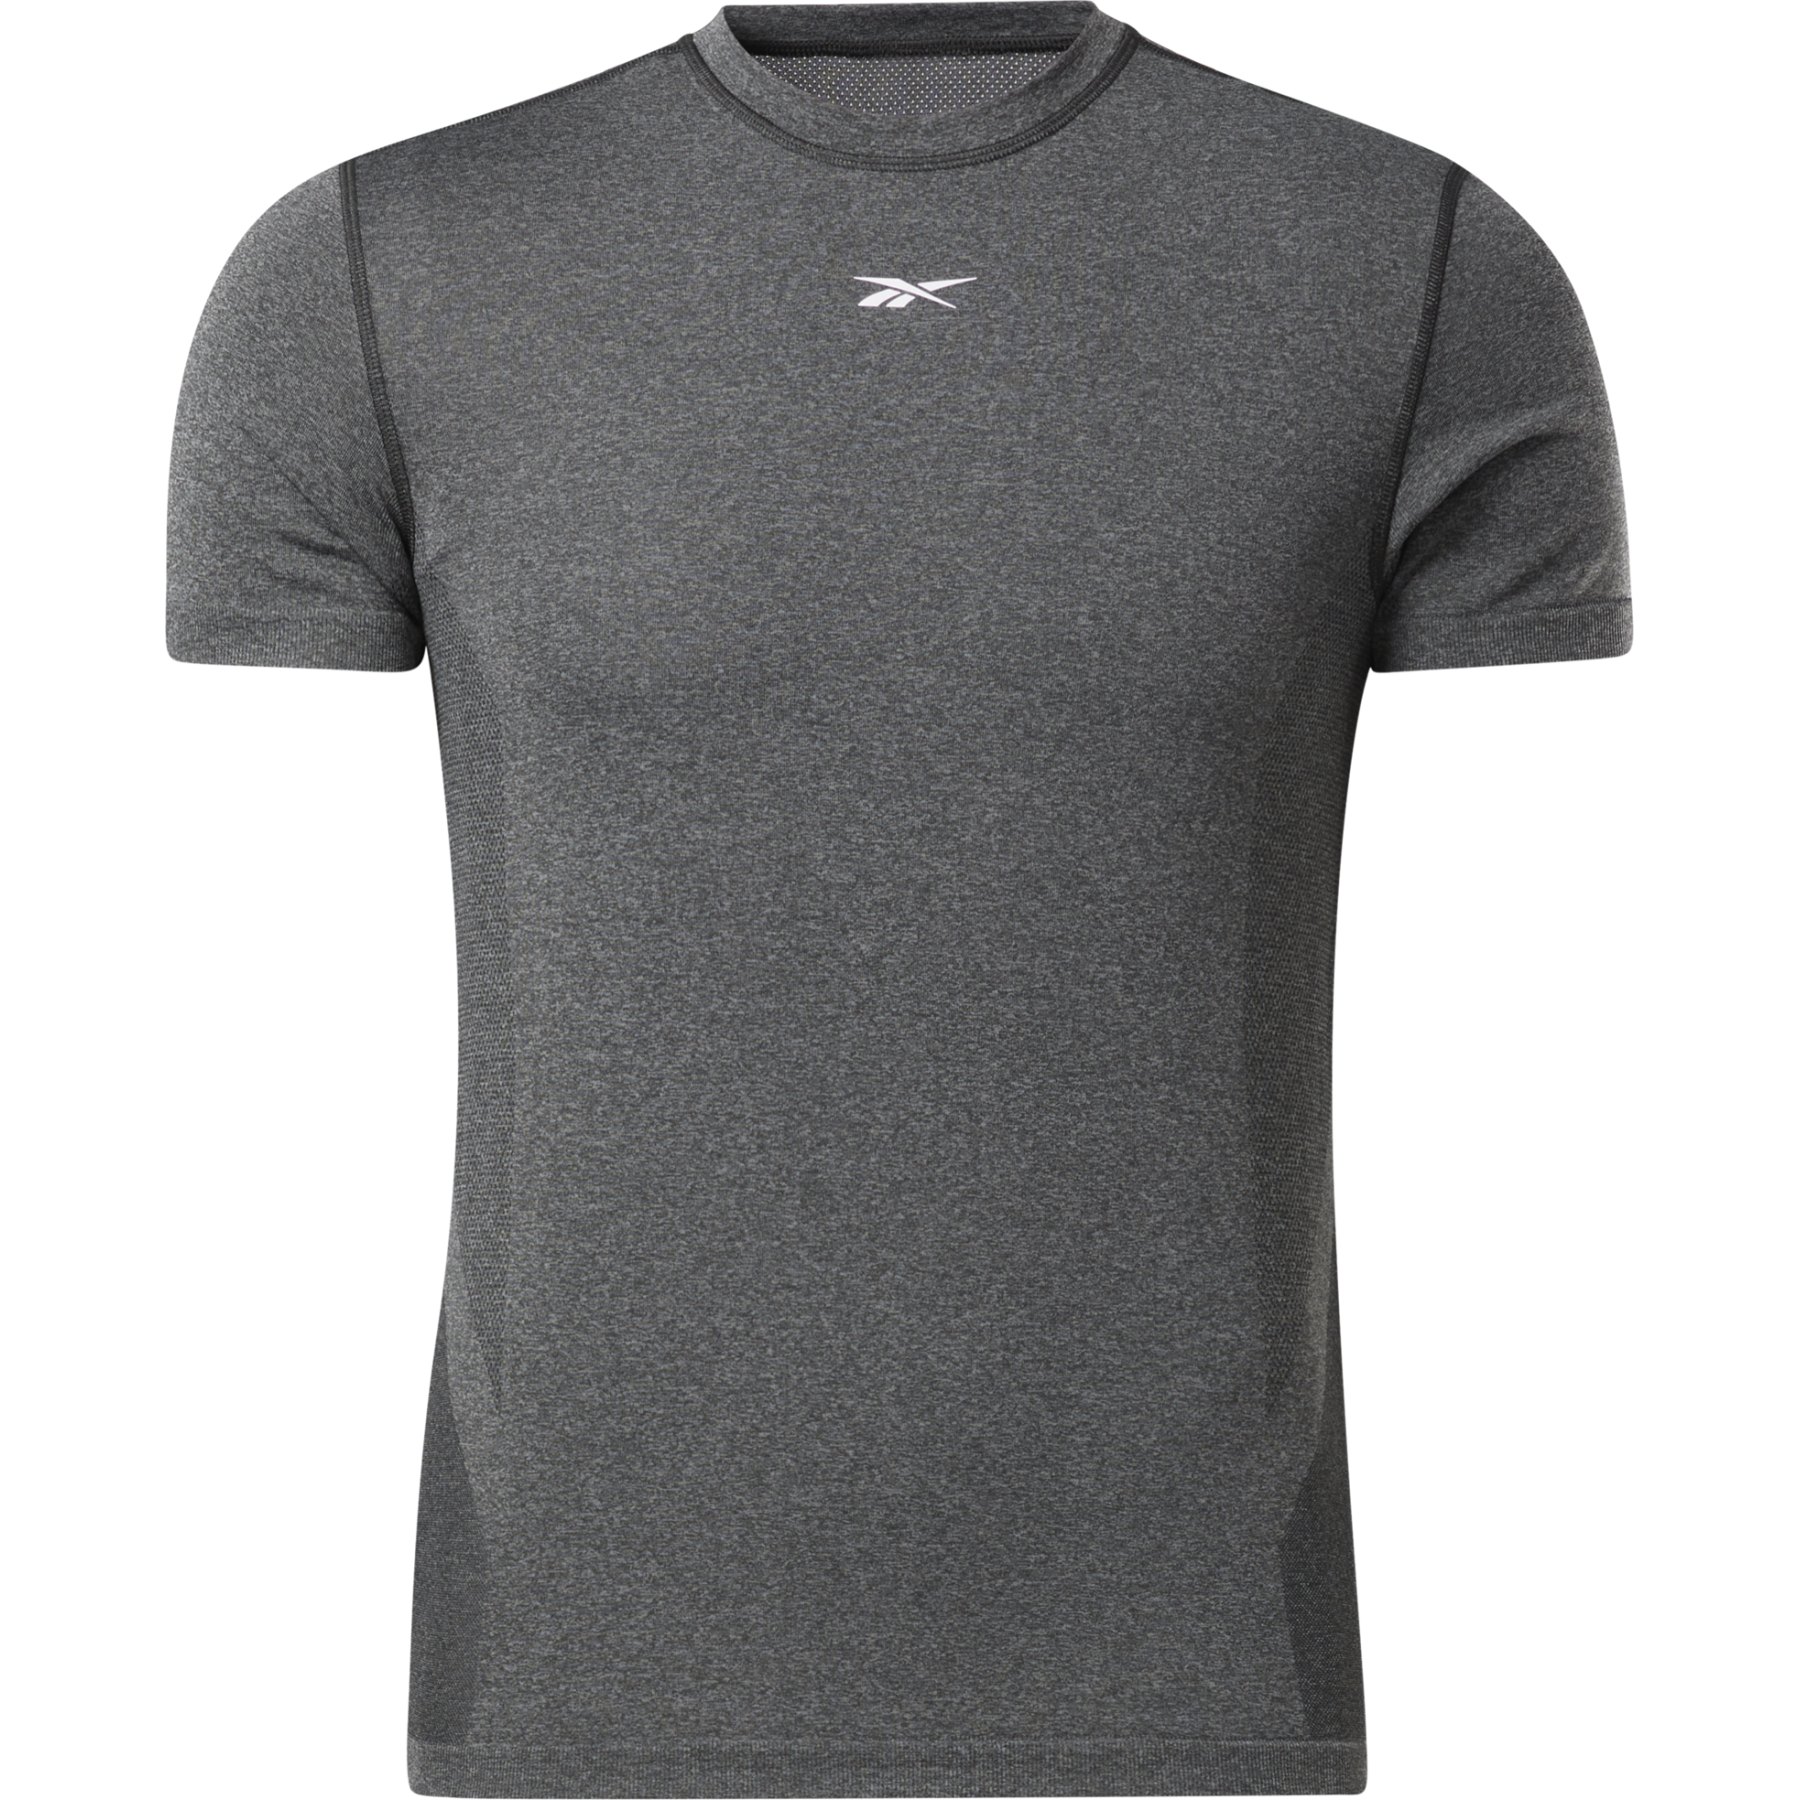 Produktbild von Reebok United by Fitness Myoknit Herren T-Shirt - schwarz